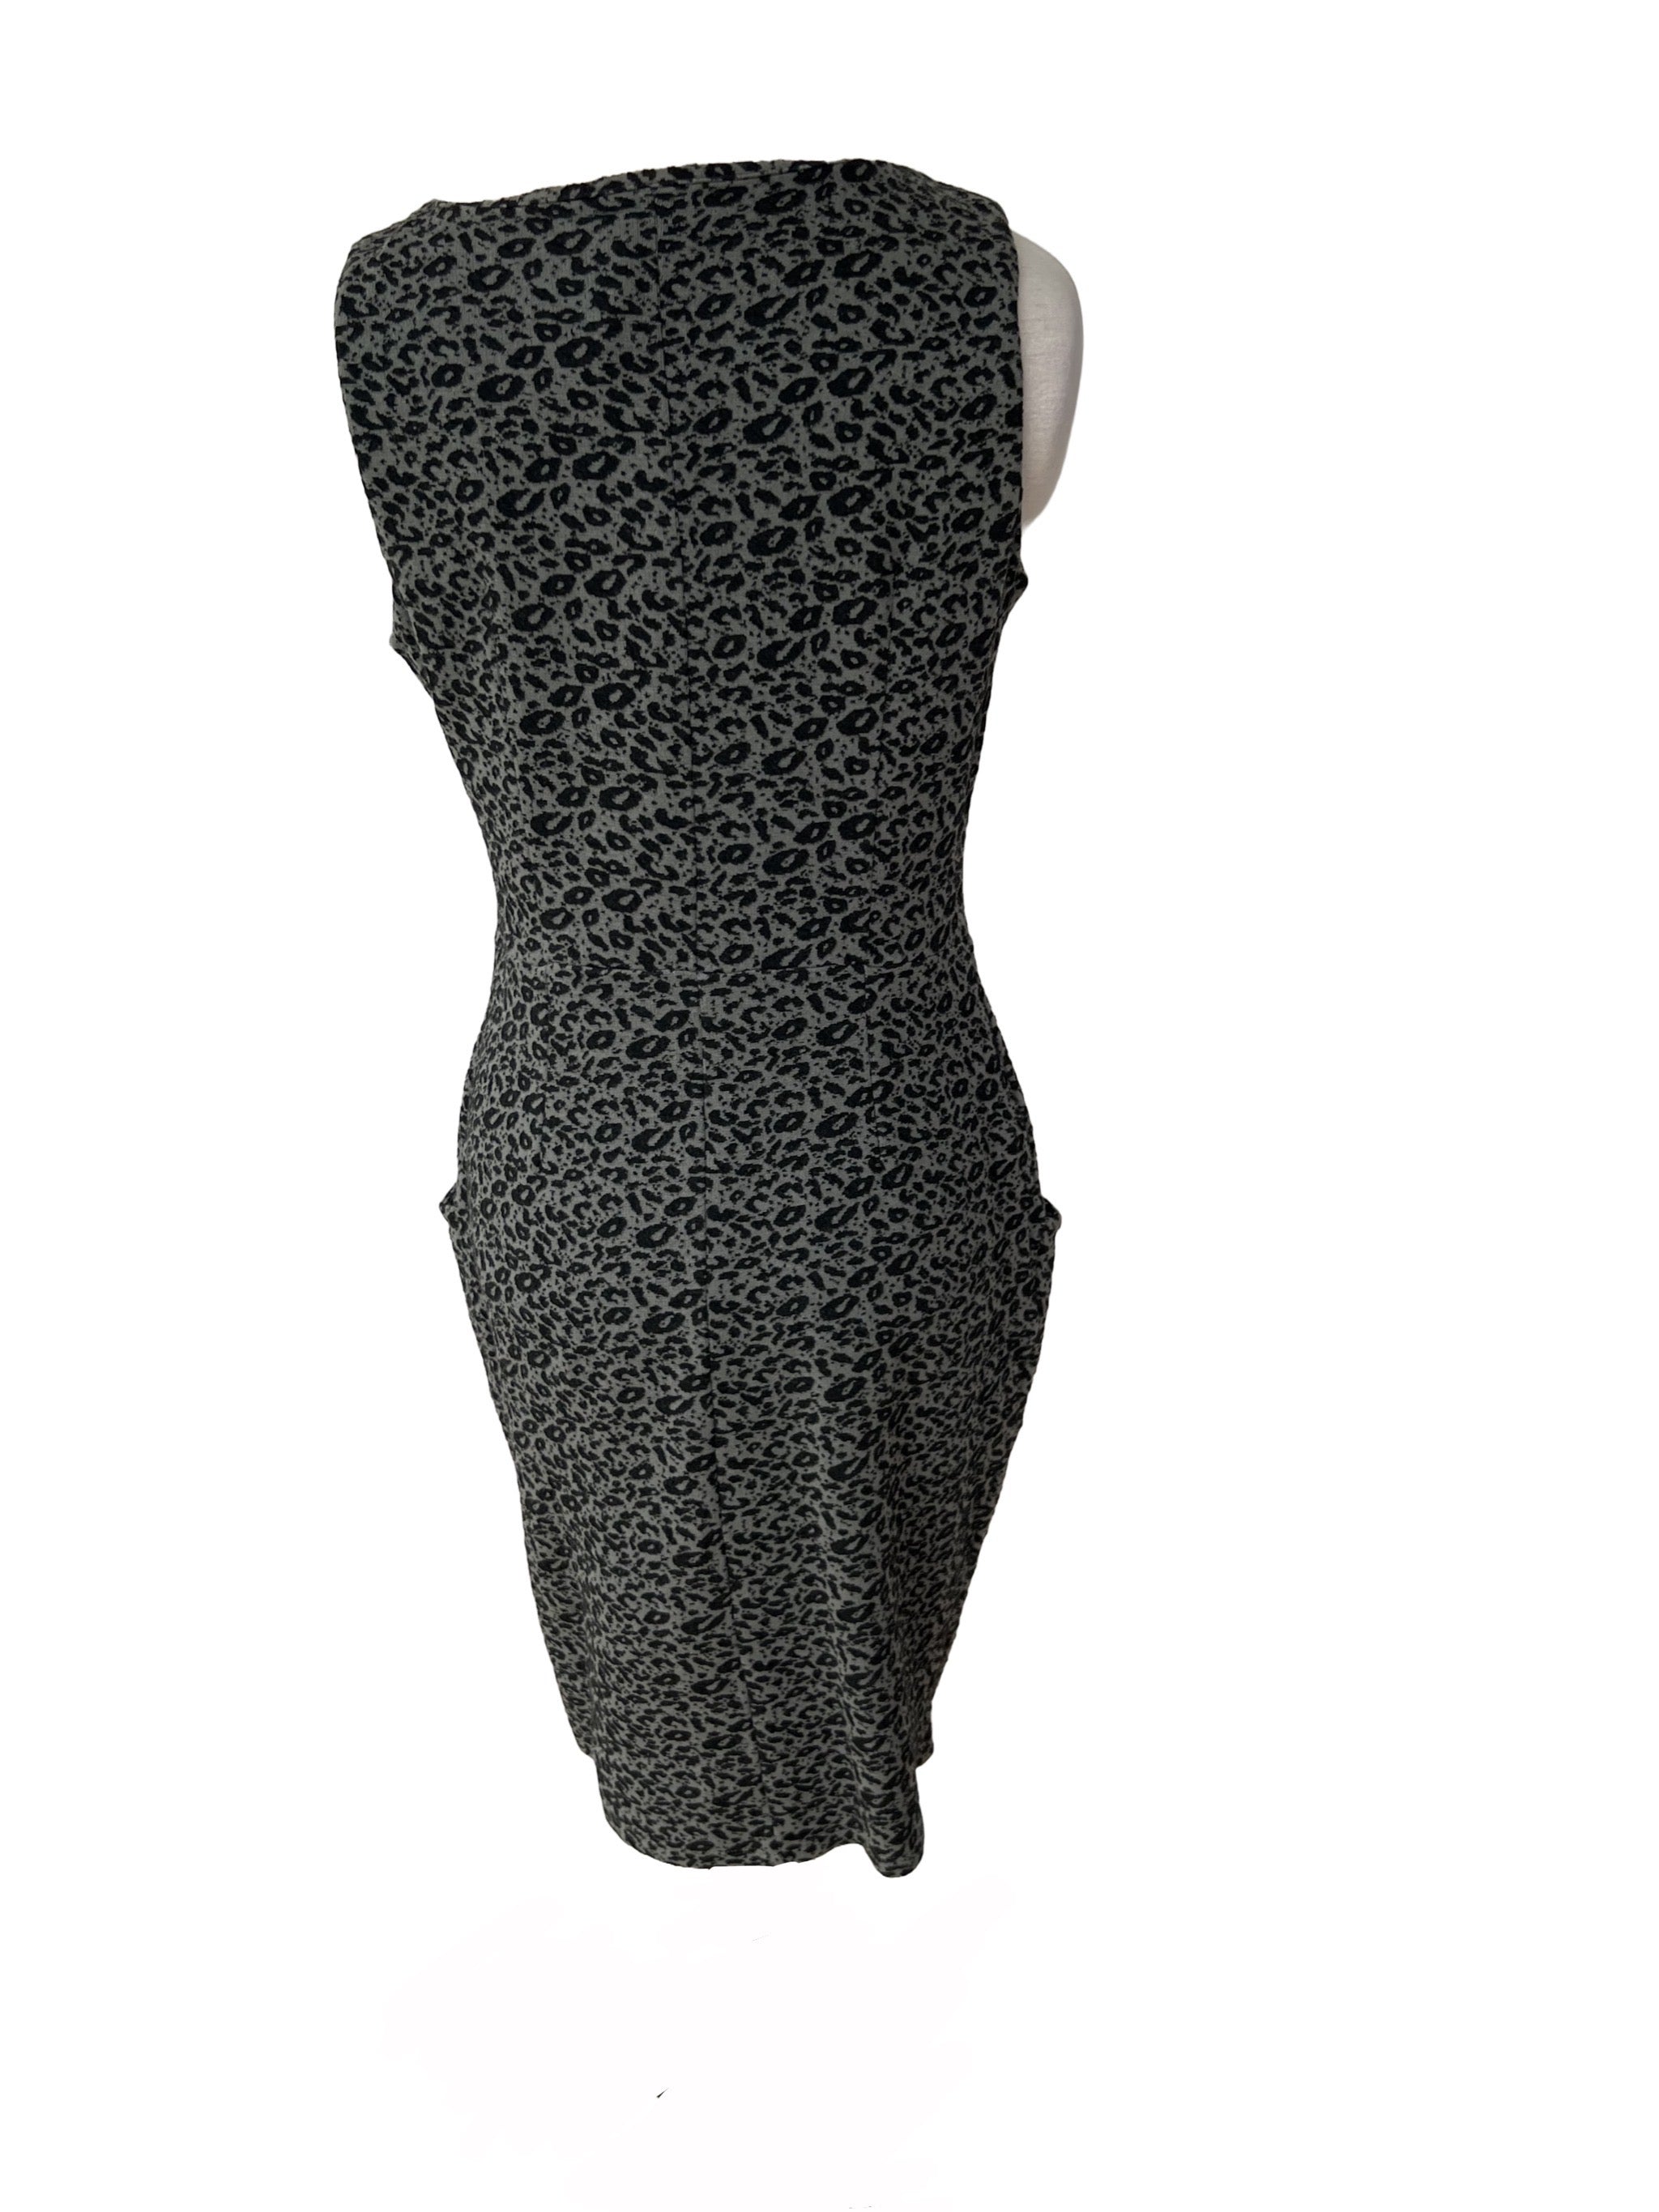 F&F Leopard Print Dress